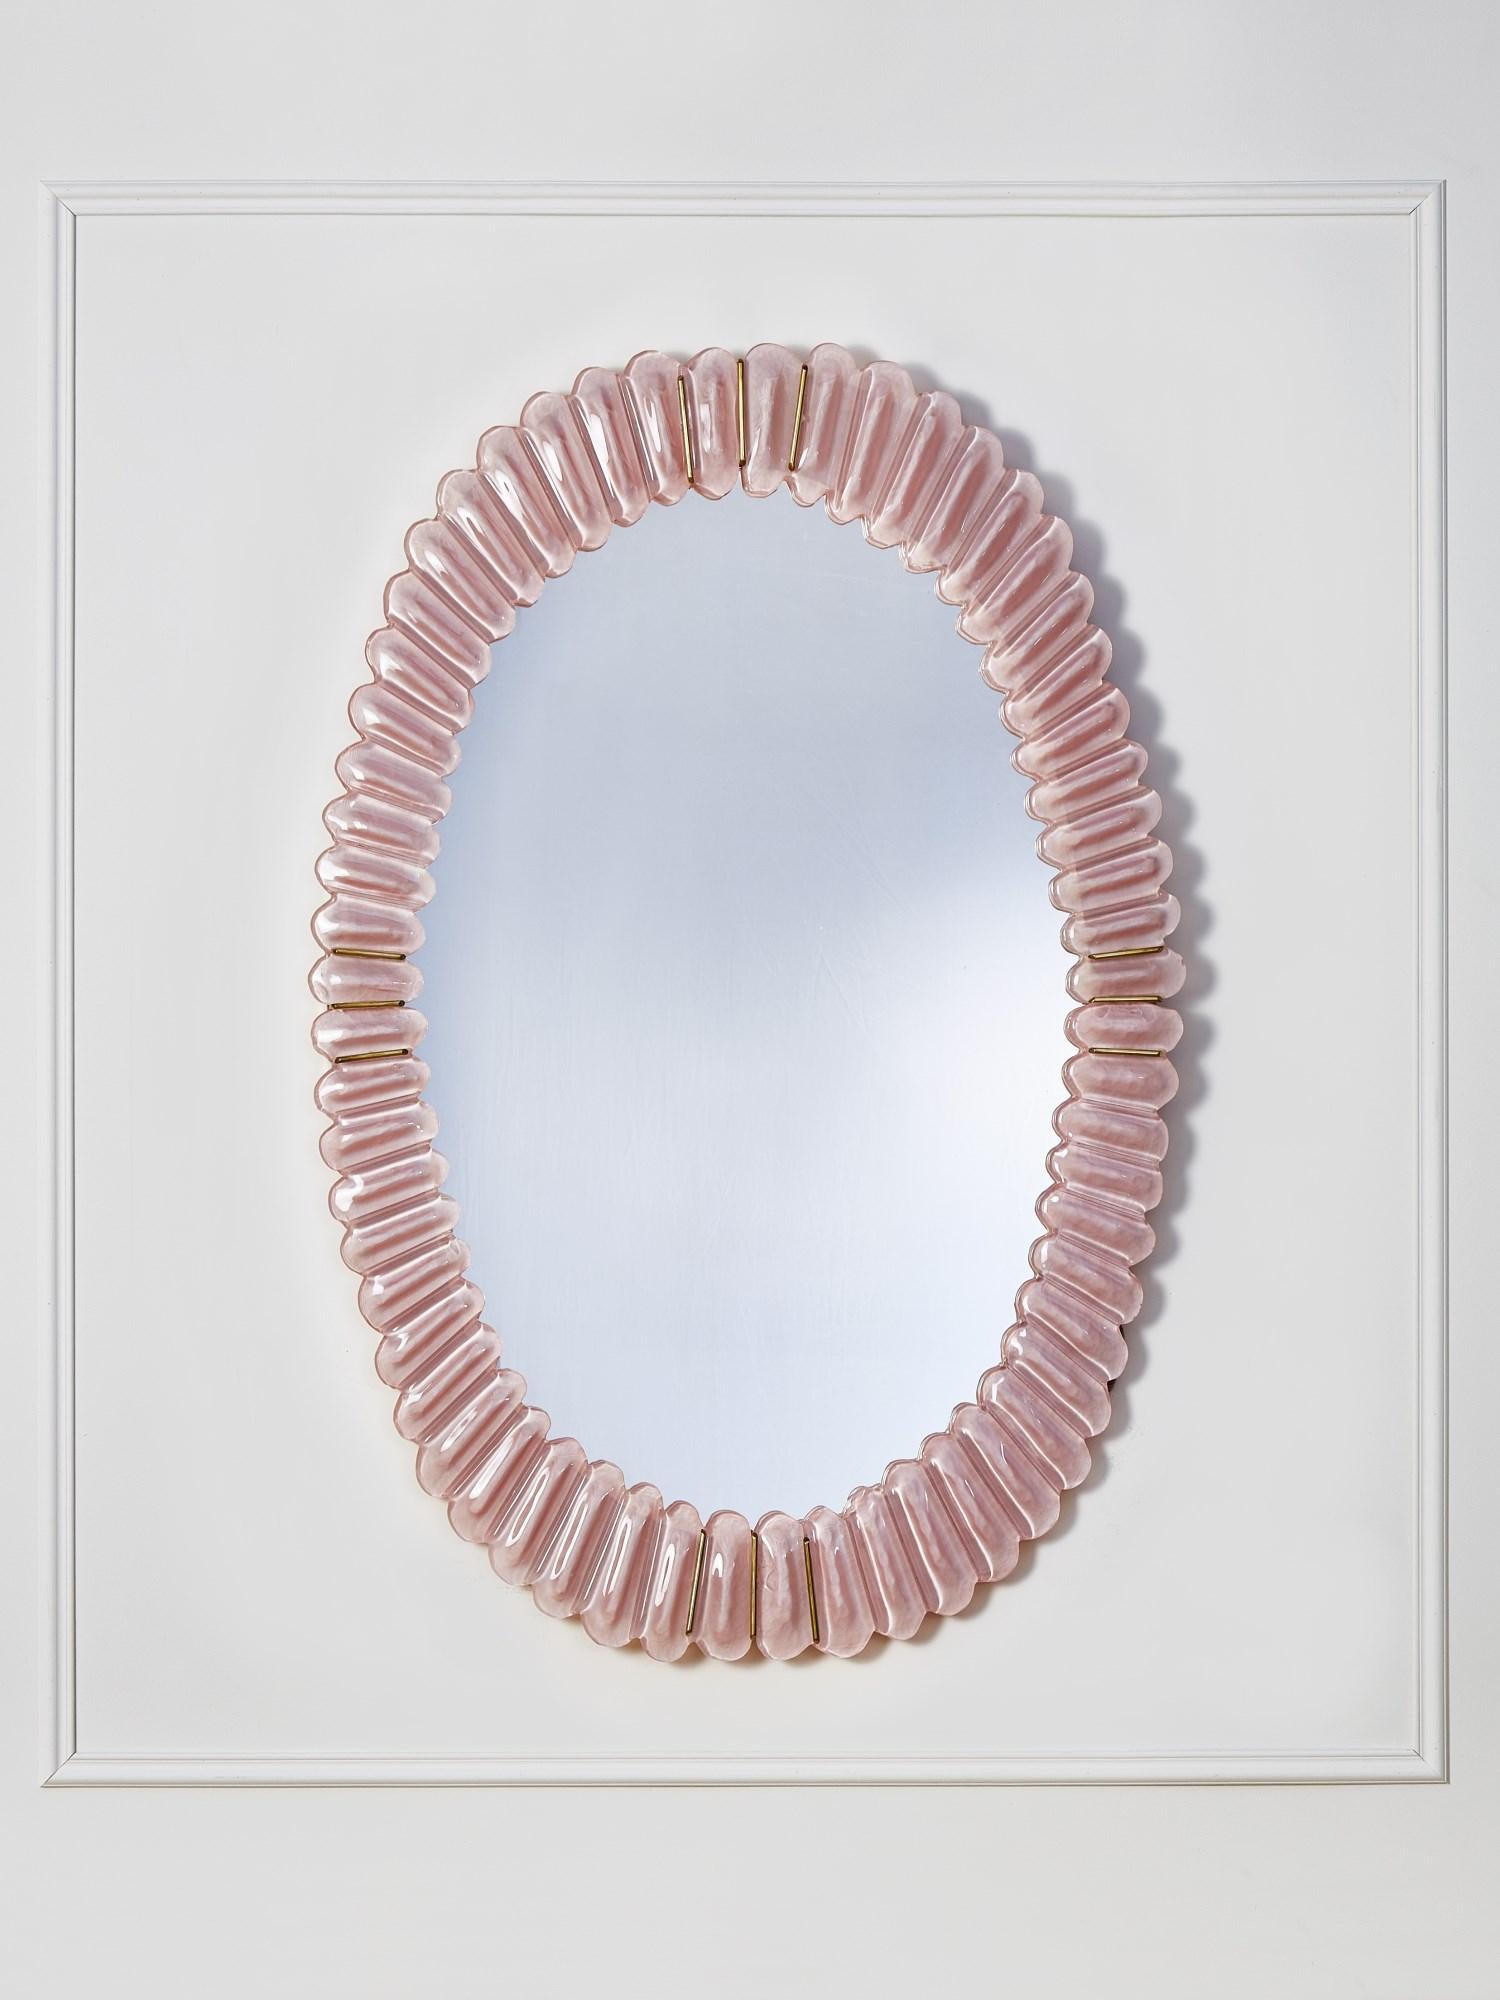 Ovaler Spiegel mit Rahmen aus geformtem Murano-Glas und Messingintarsien.
Gestaltung durch das Studio Glustin.